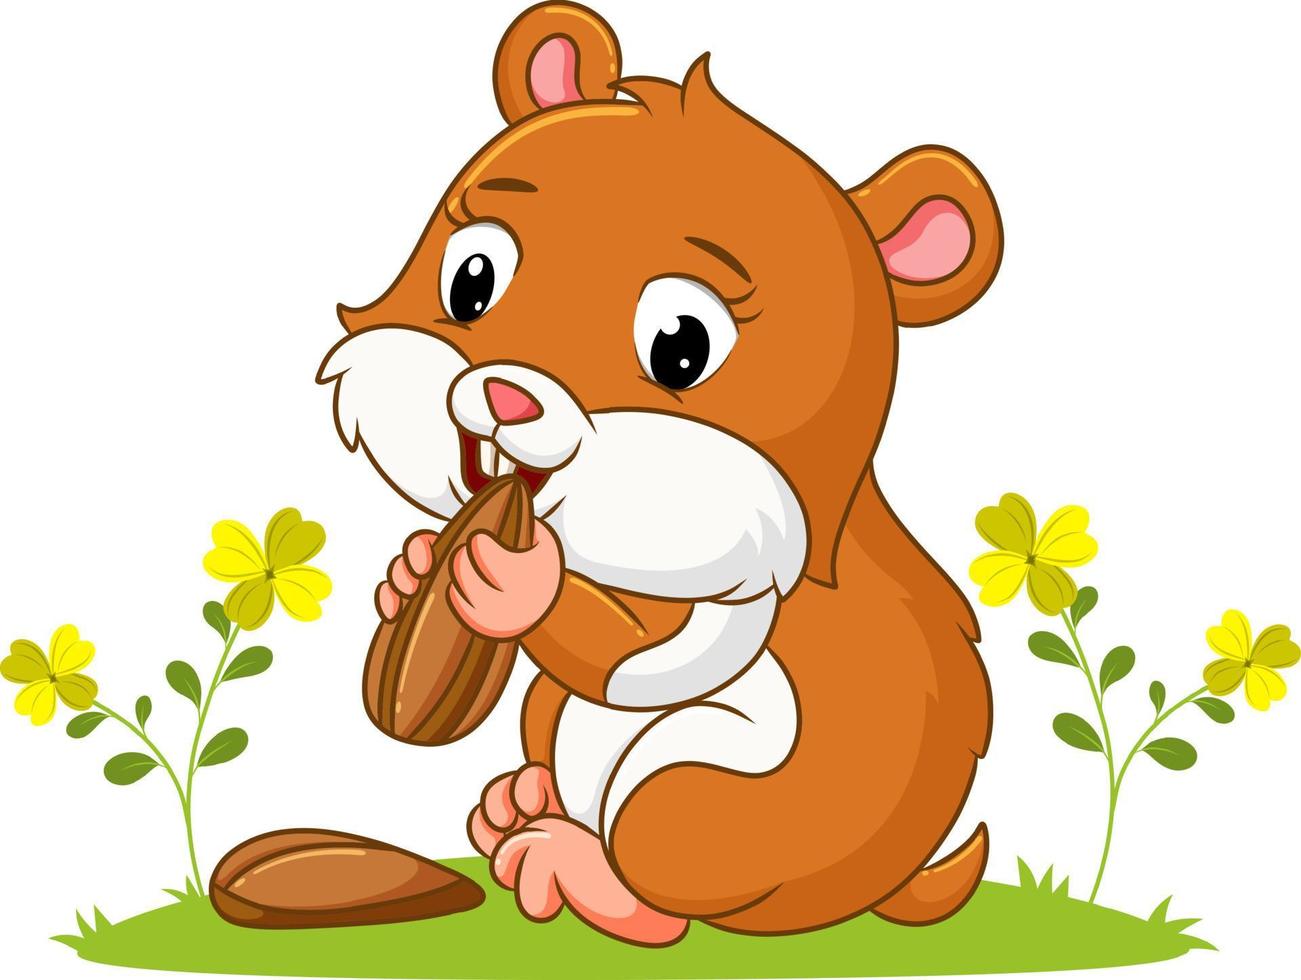 le hamster girly mange les graines de tournesol dans le jardin vecteur